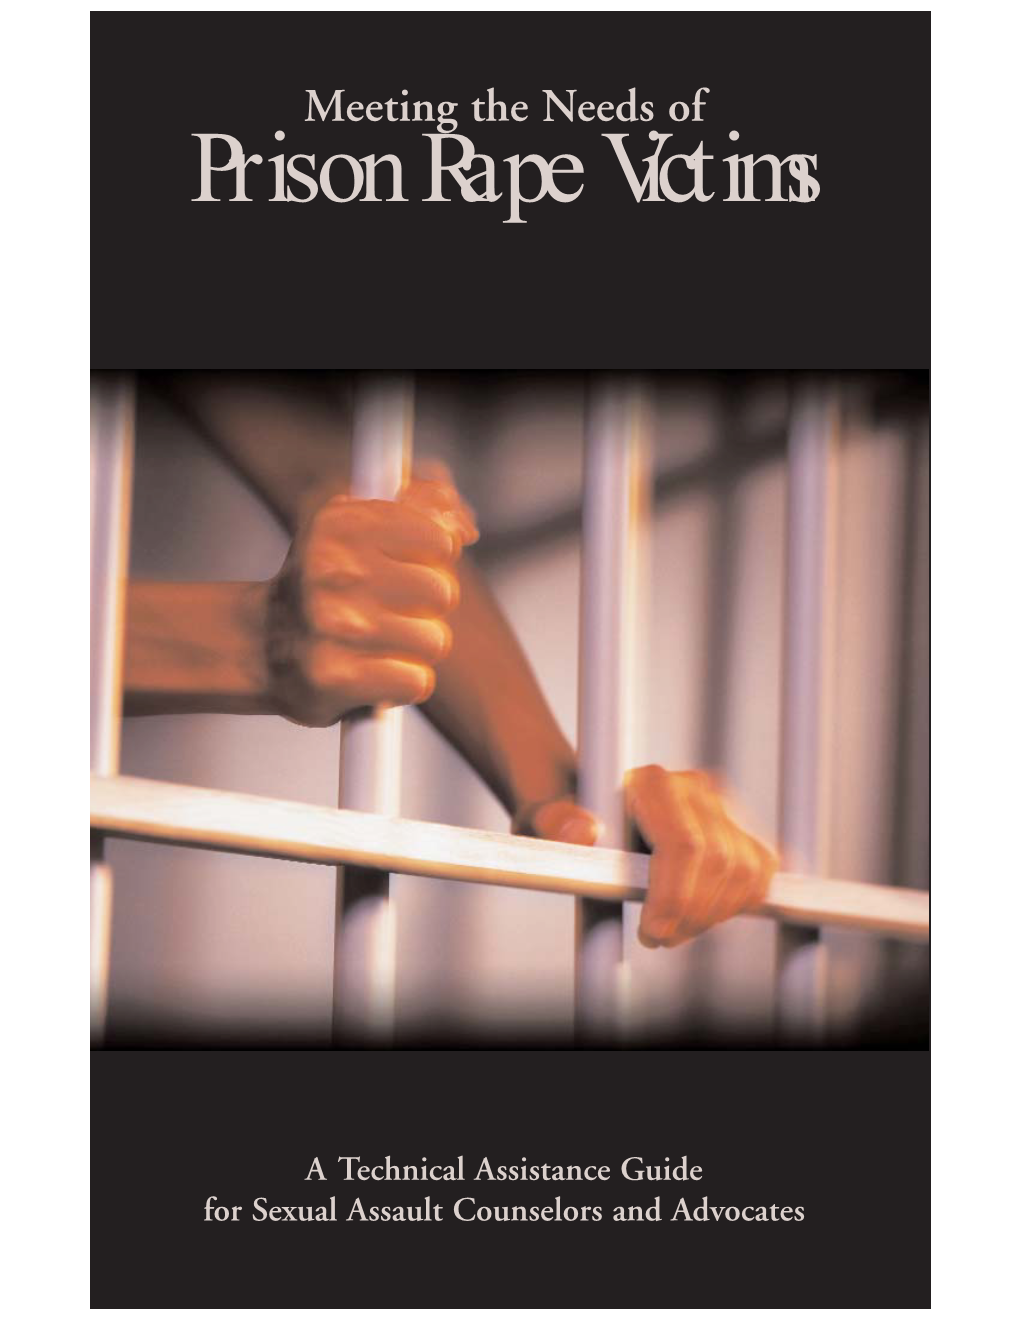 Prison Rape Guide.Qxd